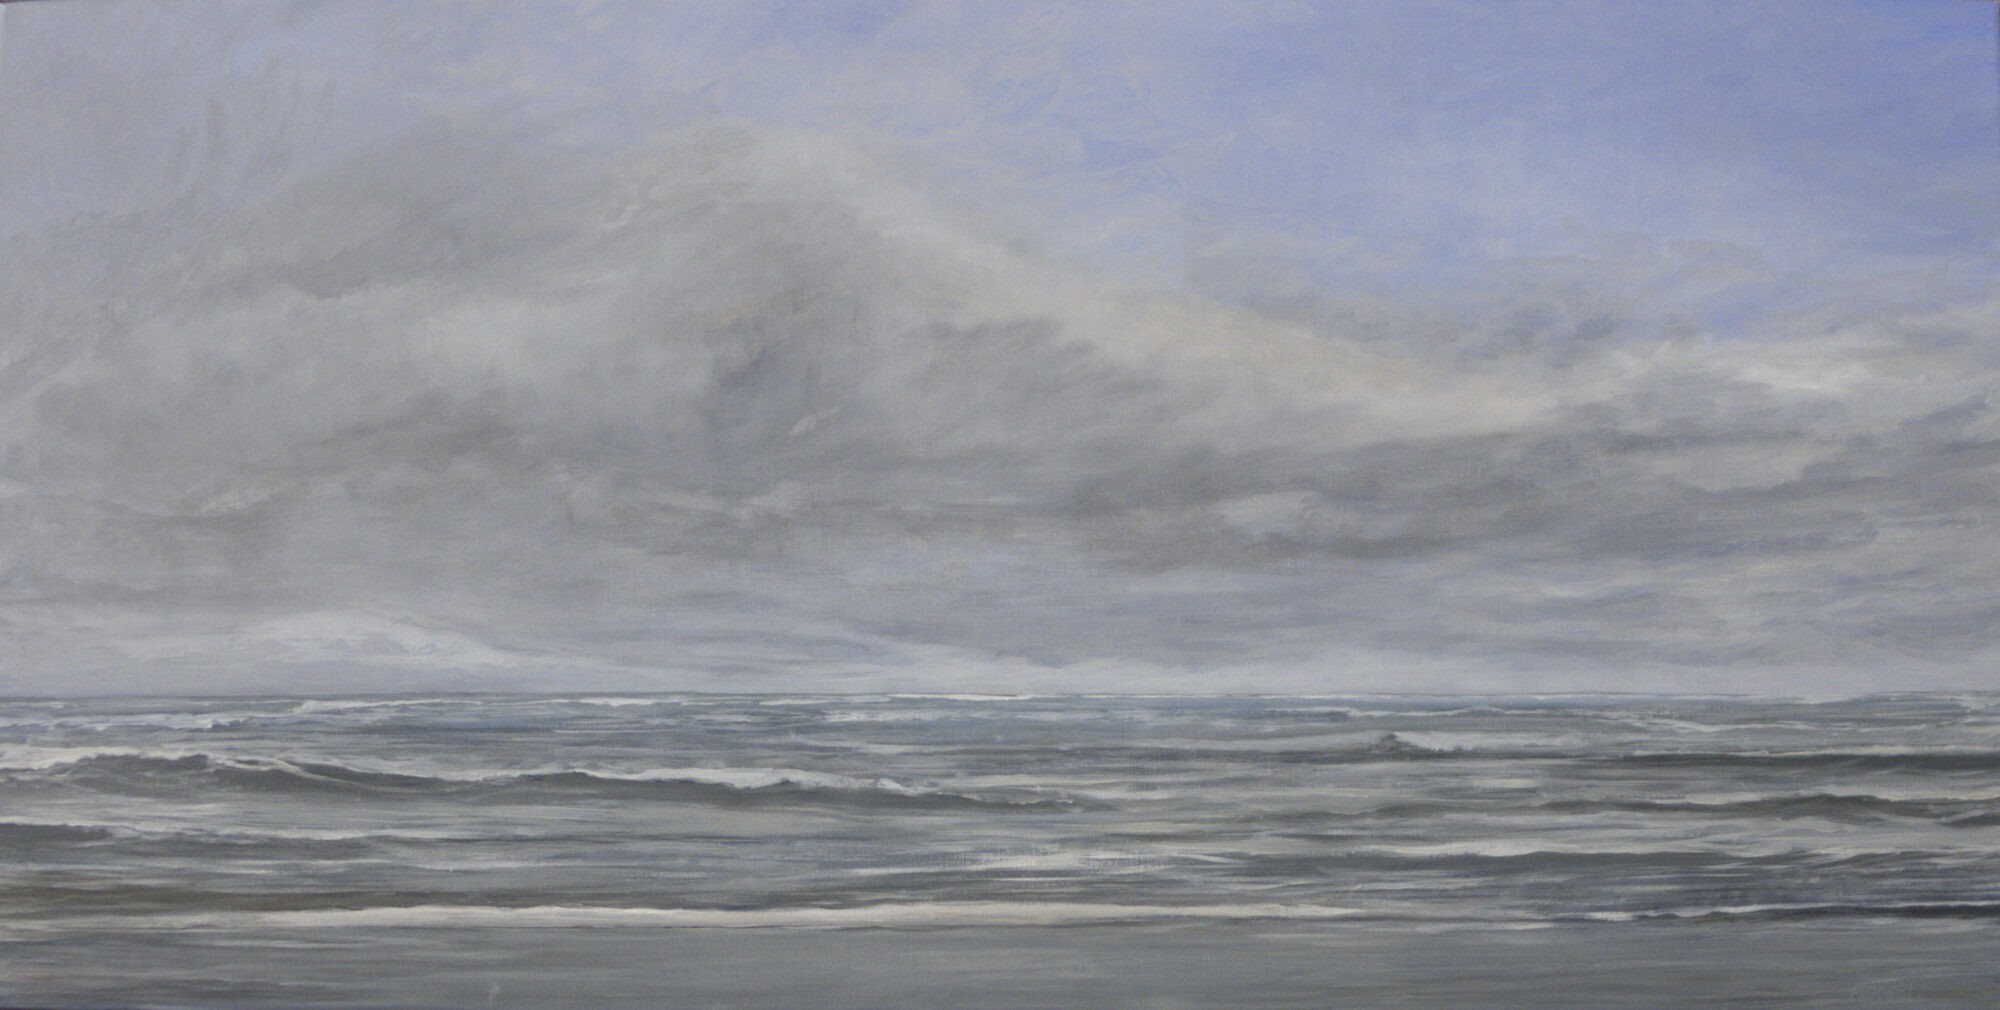 zee met golven en erboven een wolk tegen blauwe lucht, geschilderd in olieverf